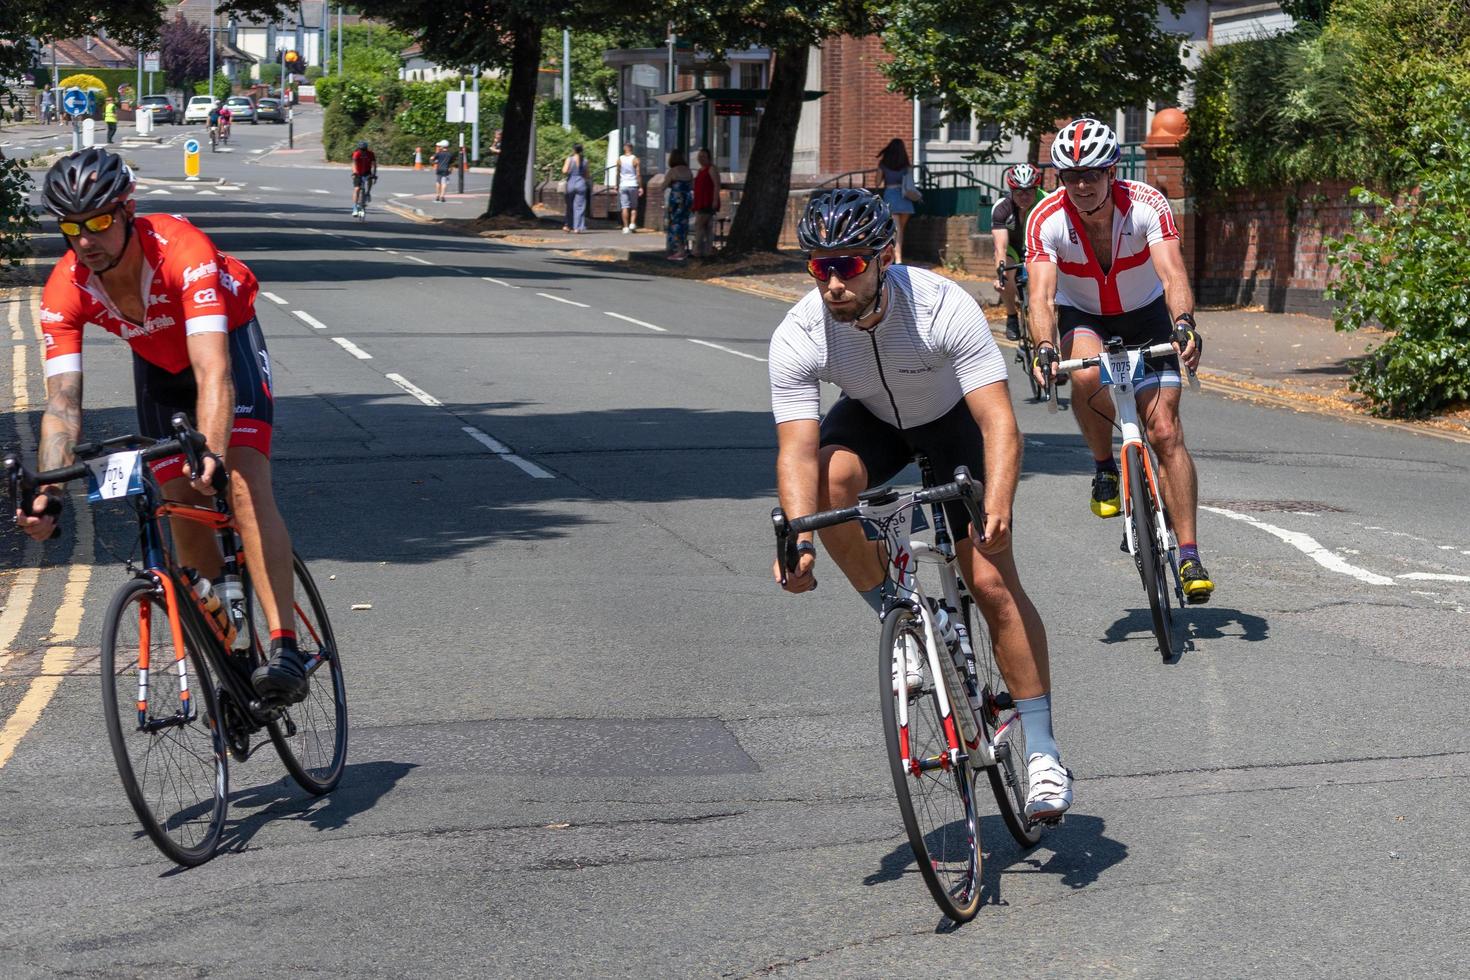 cardiff, wales, uk, 2018. fietsers die deelnemen aan het wielerevenement velothon foto